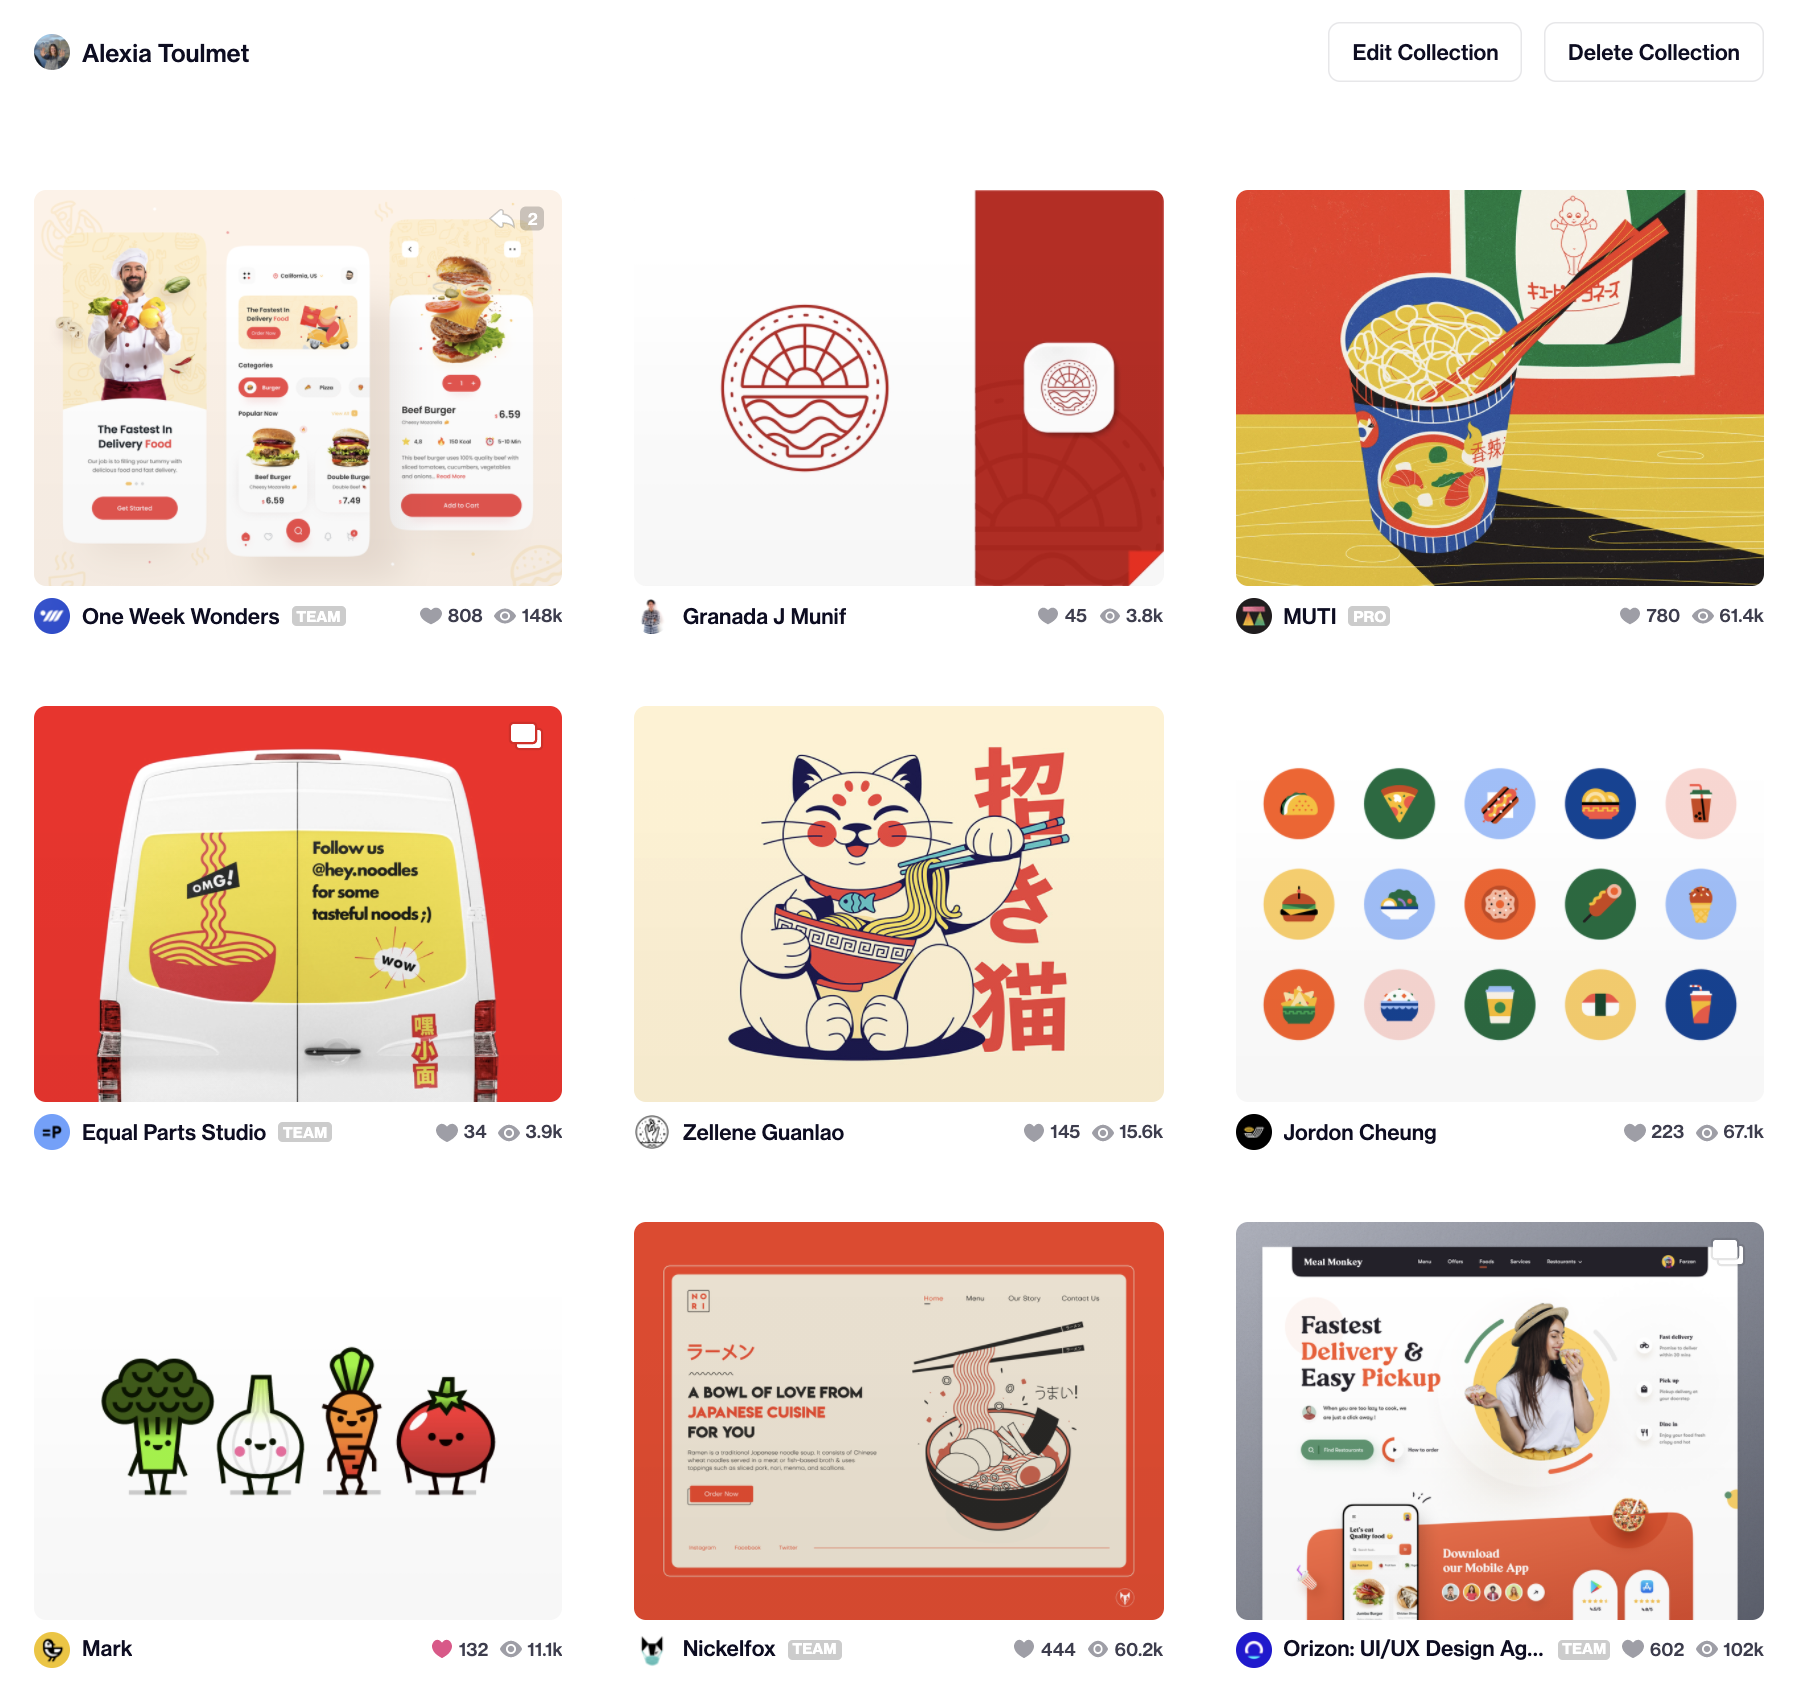 Une page avec 9 images : quelques interfaces de commande de repas en ligne, quelques images de nouilles asiatiques et une image des légumes déssinés.